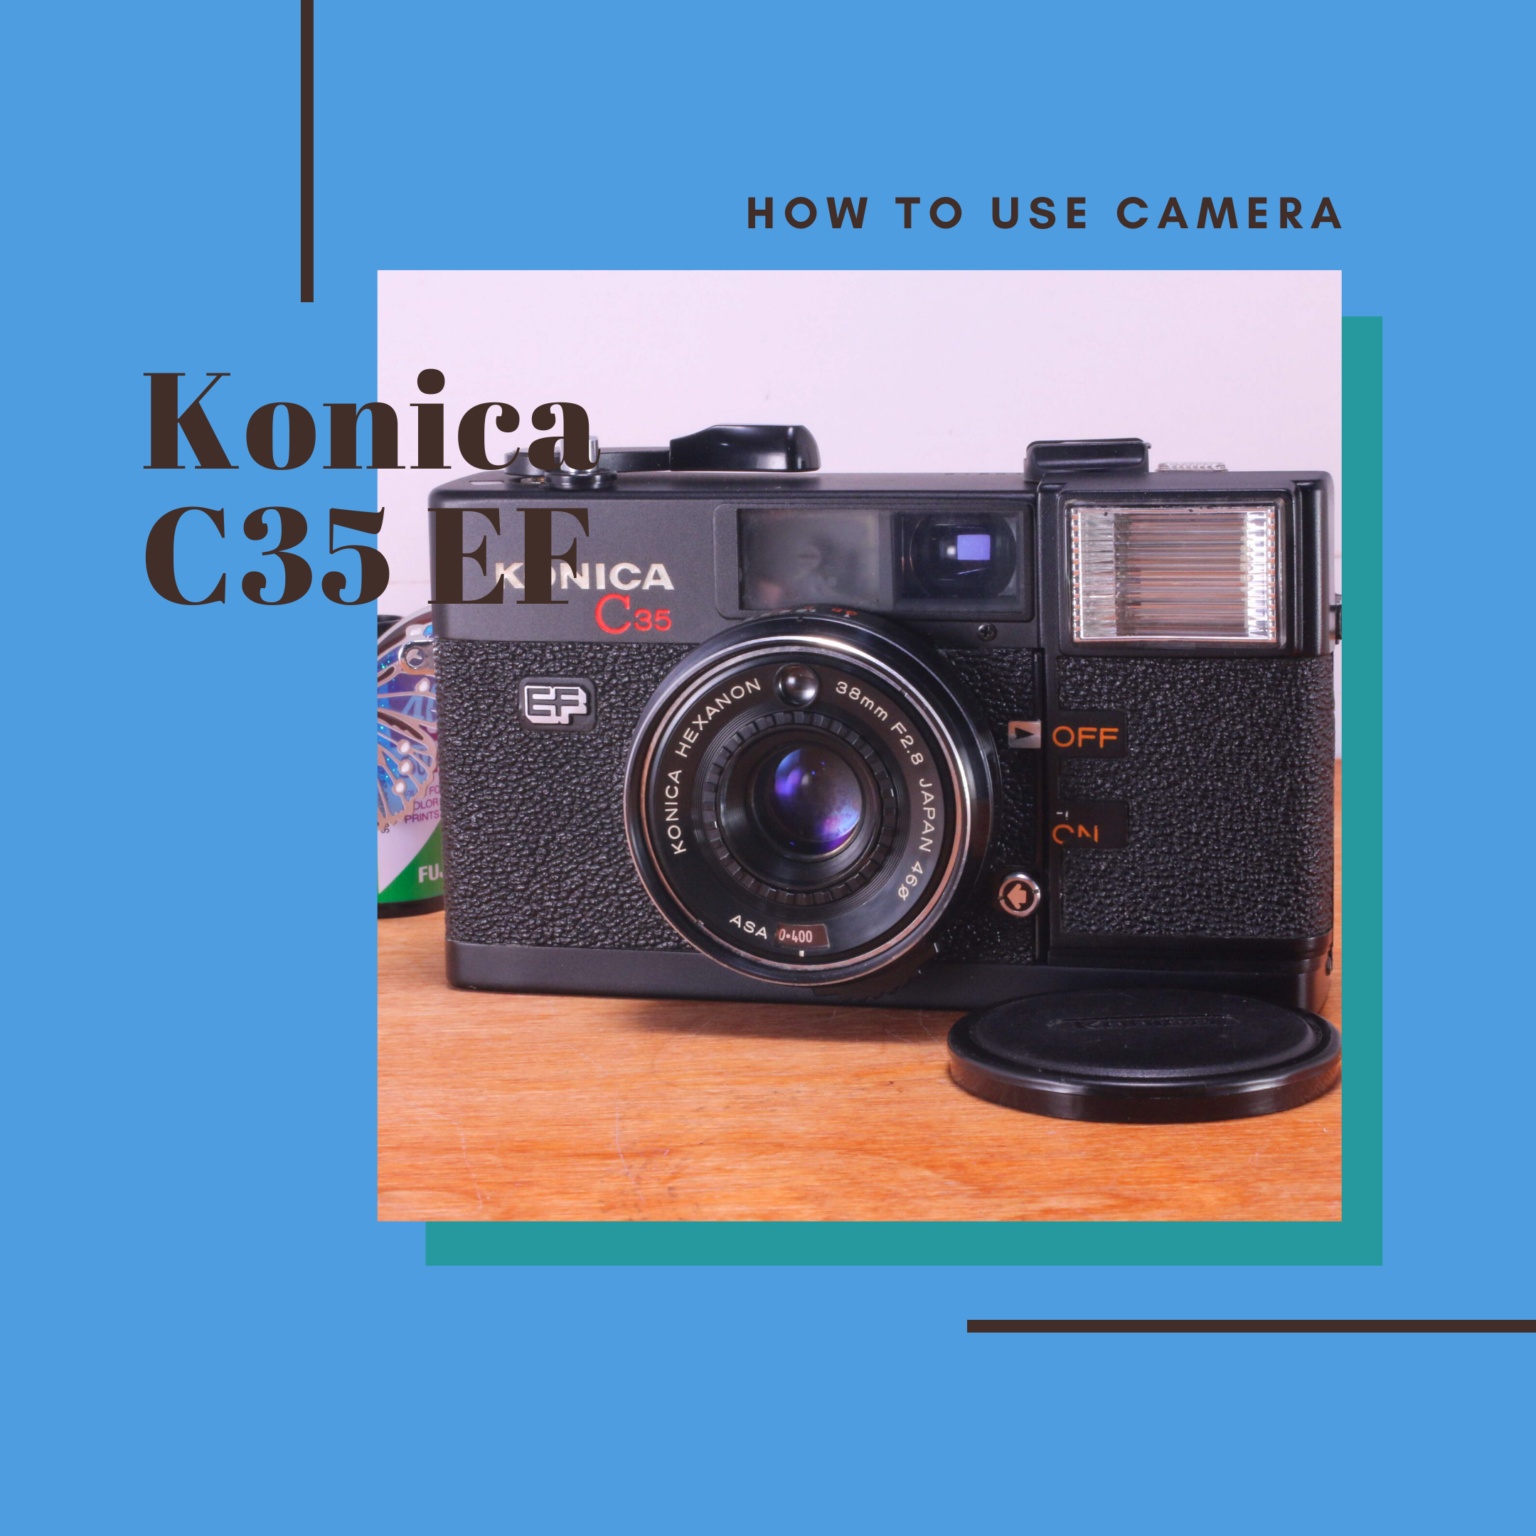 KONICA C35 EF フィルムカメラ - フィルムカメラ